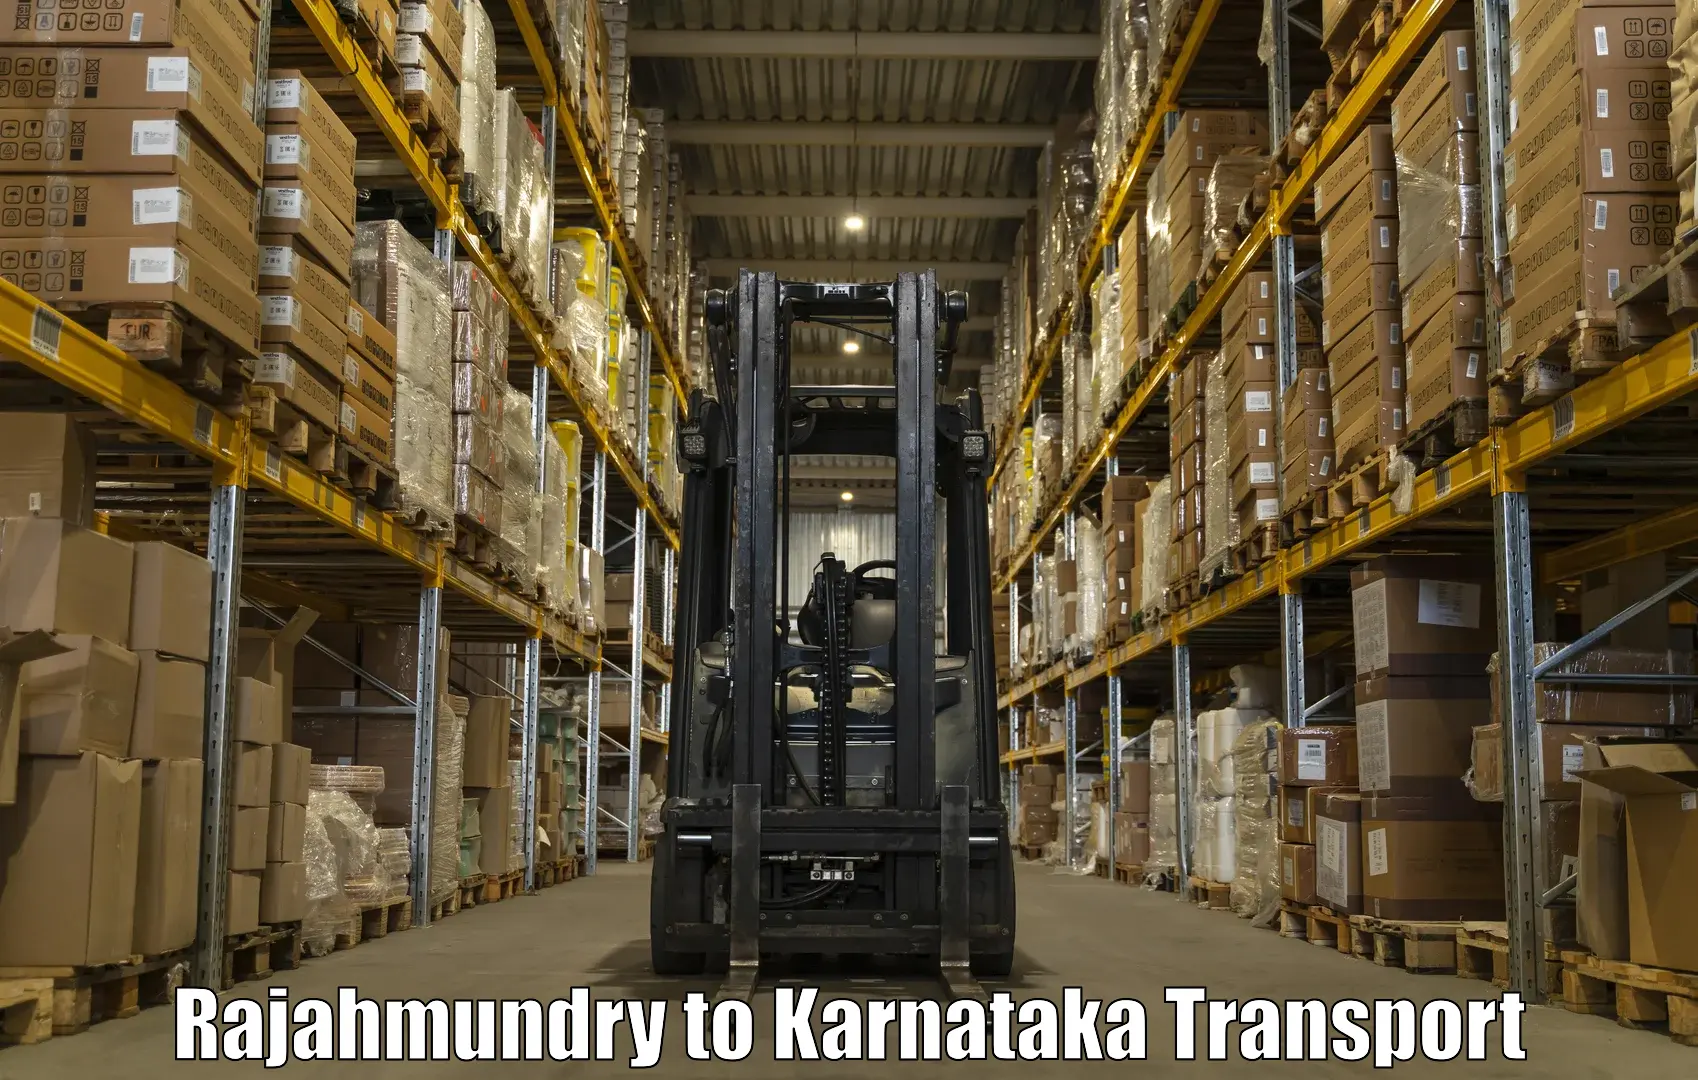 Furniture transport service Rajahmundry to Kolhar